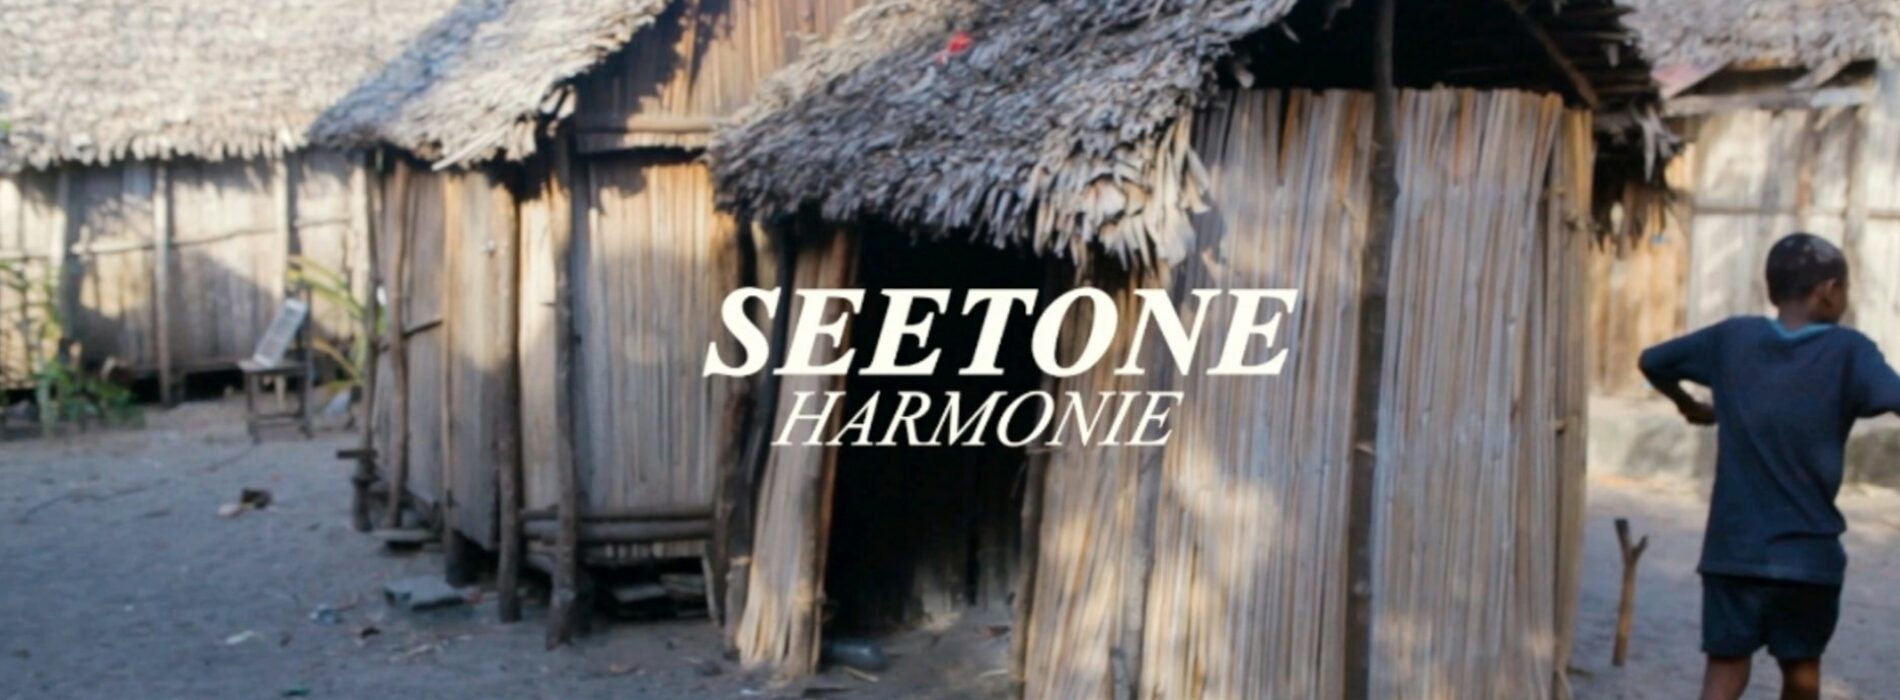 Seetone – « harmonie » (clip officiel) – Septembre 2021 🙏💯